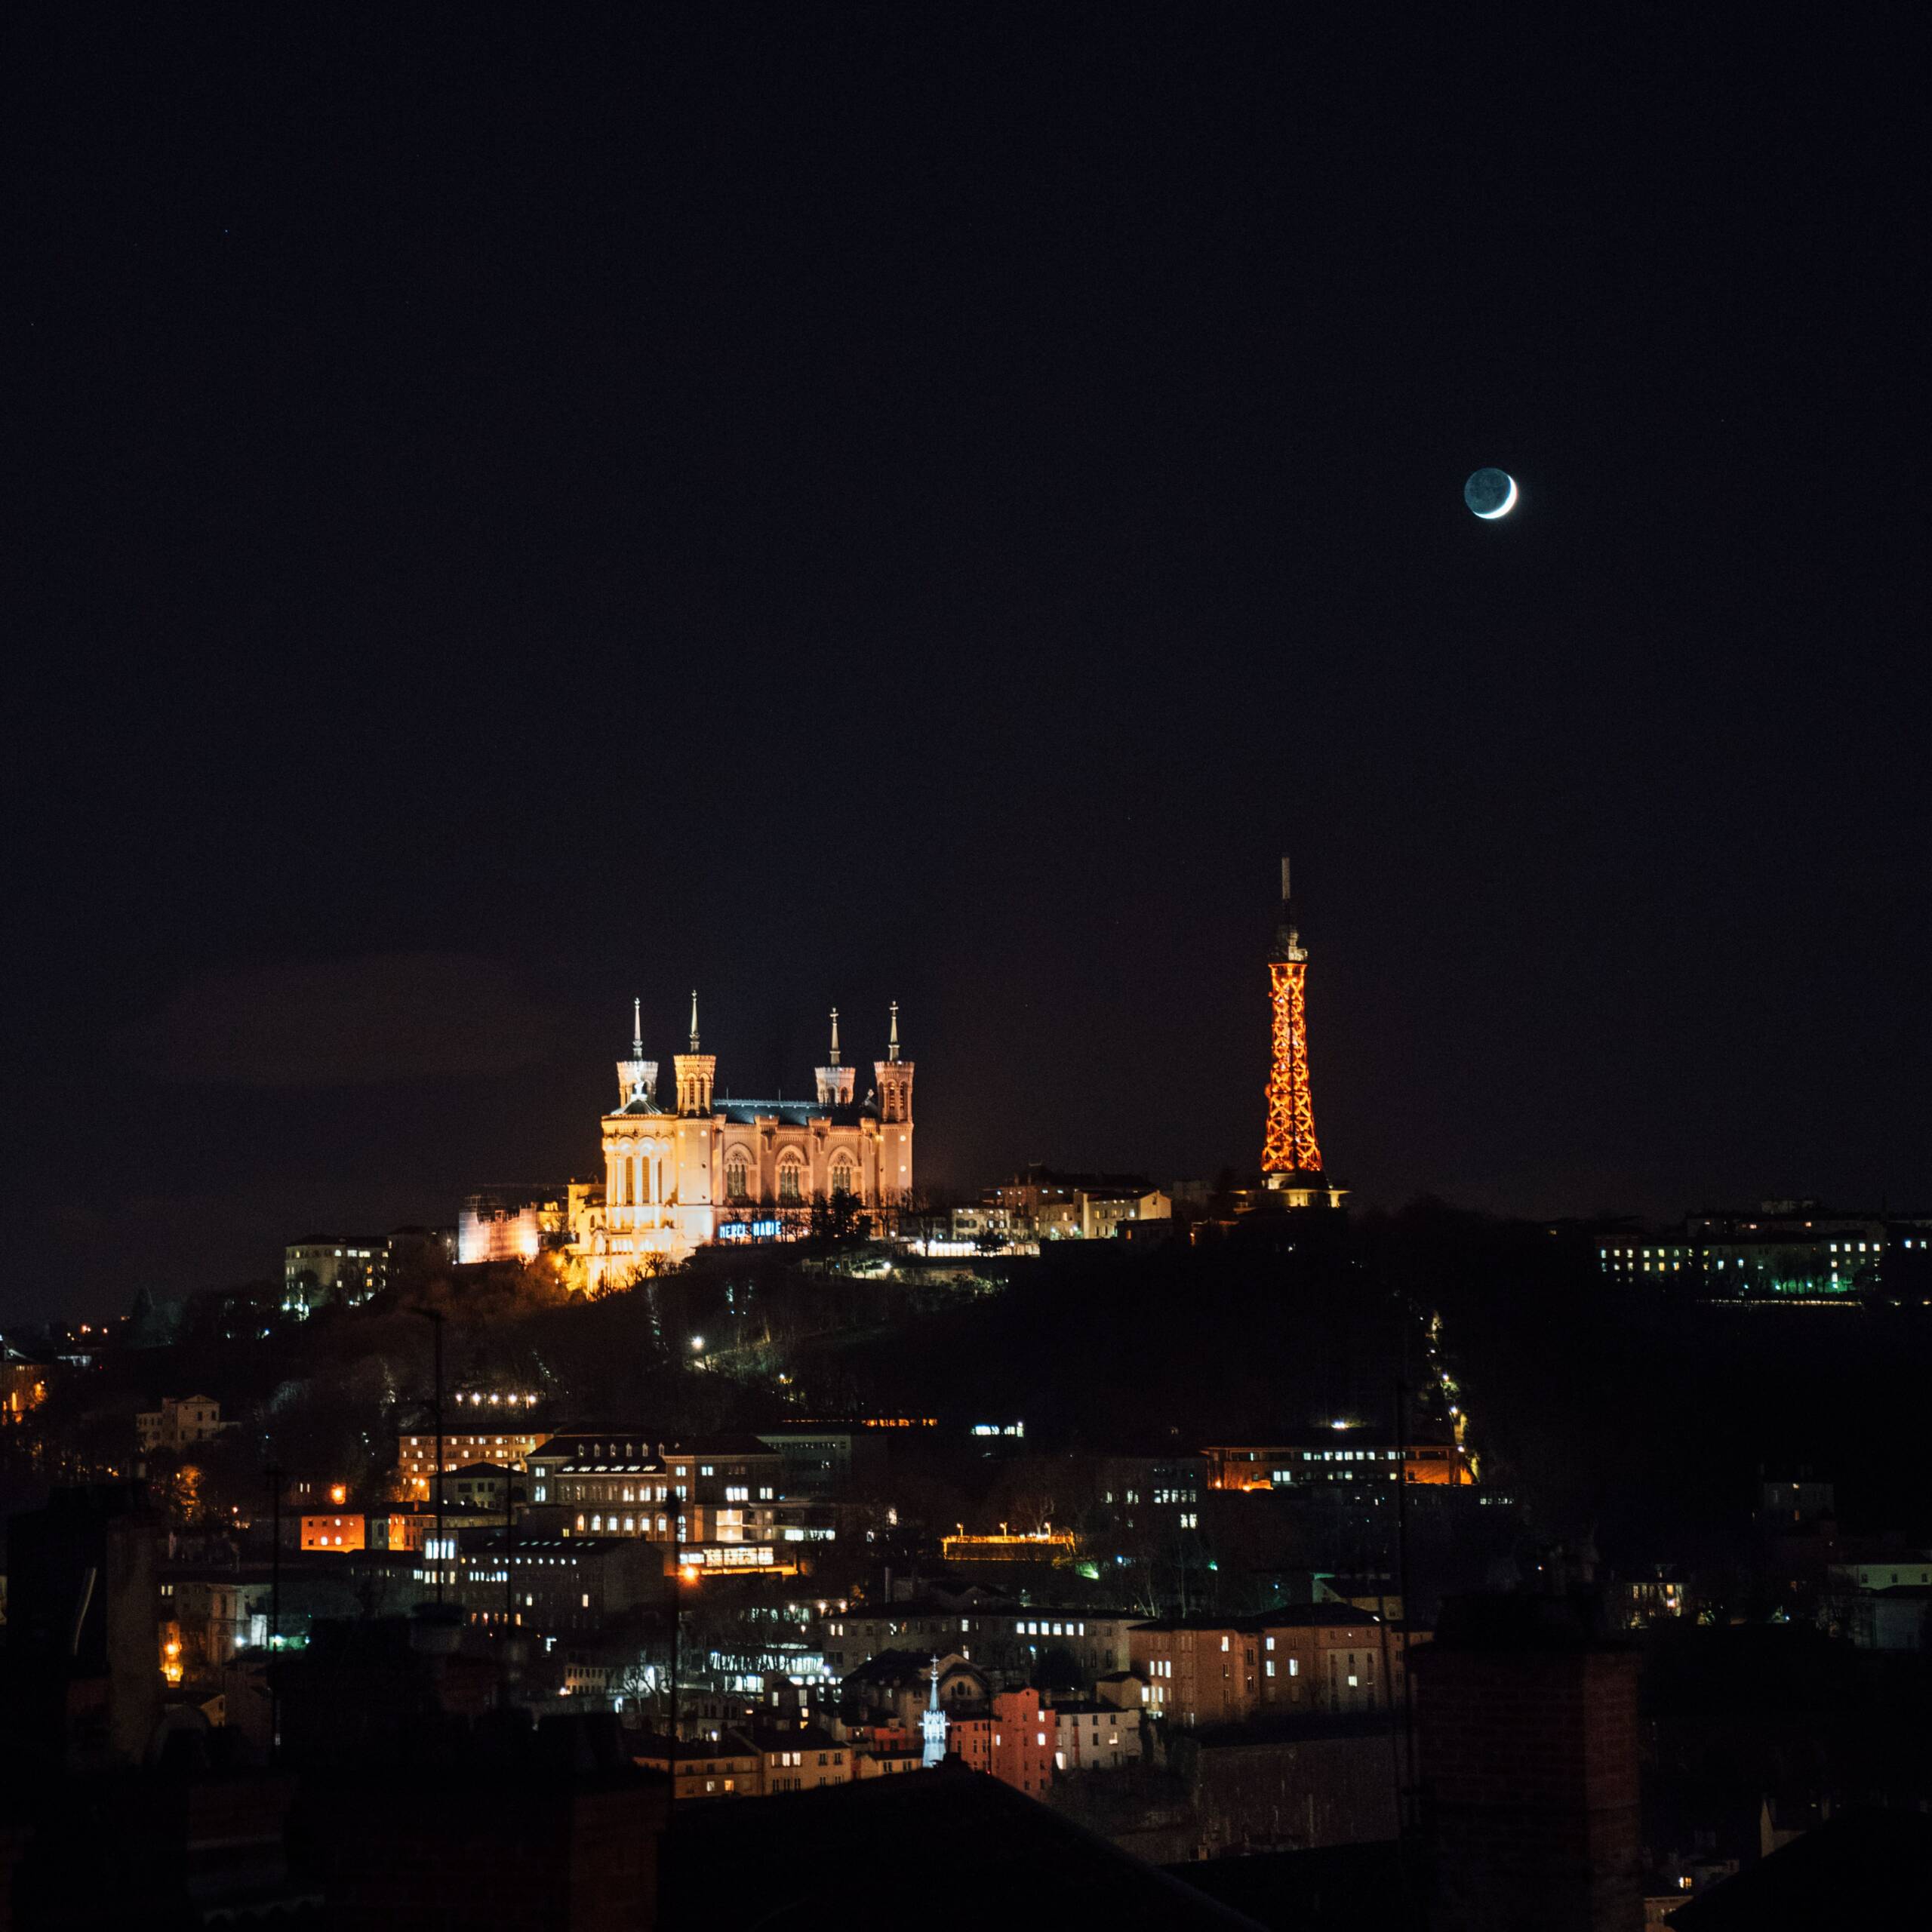 Image de Lyon le soir. On peut y apercevoir fourvière et une partie de la croix rousse. On voit la basilique Notre Date de Fourvièrer qui est illuminé ainsi que la tour eiffel de Lyon.